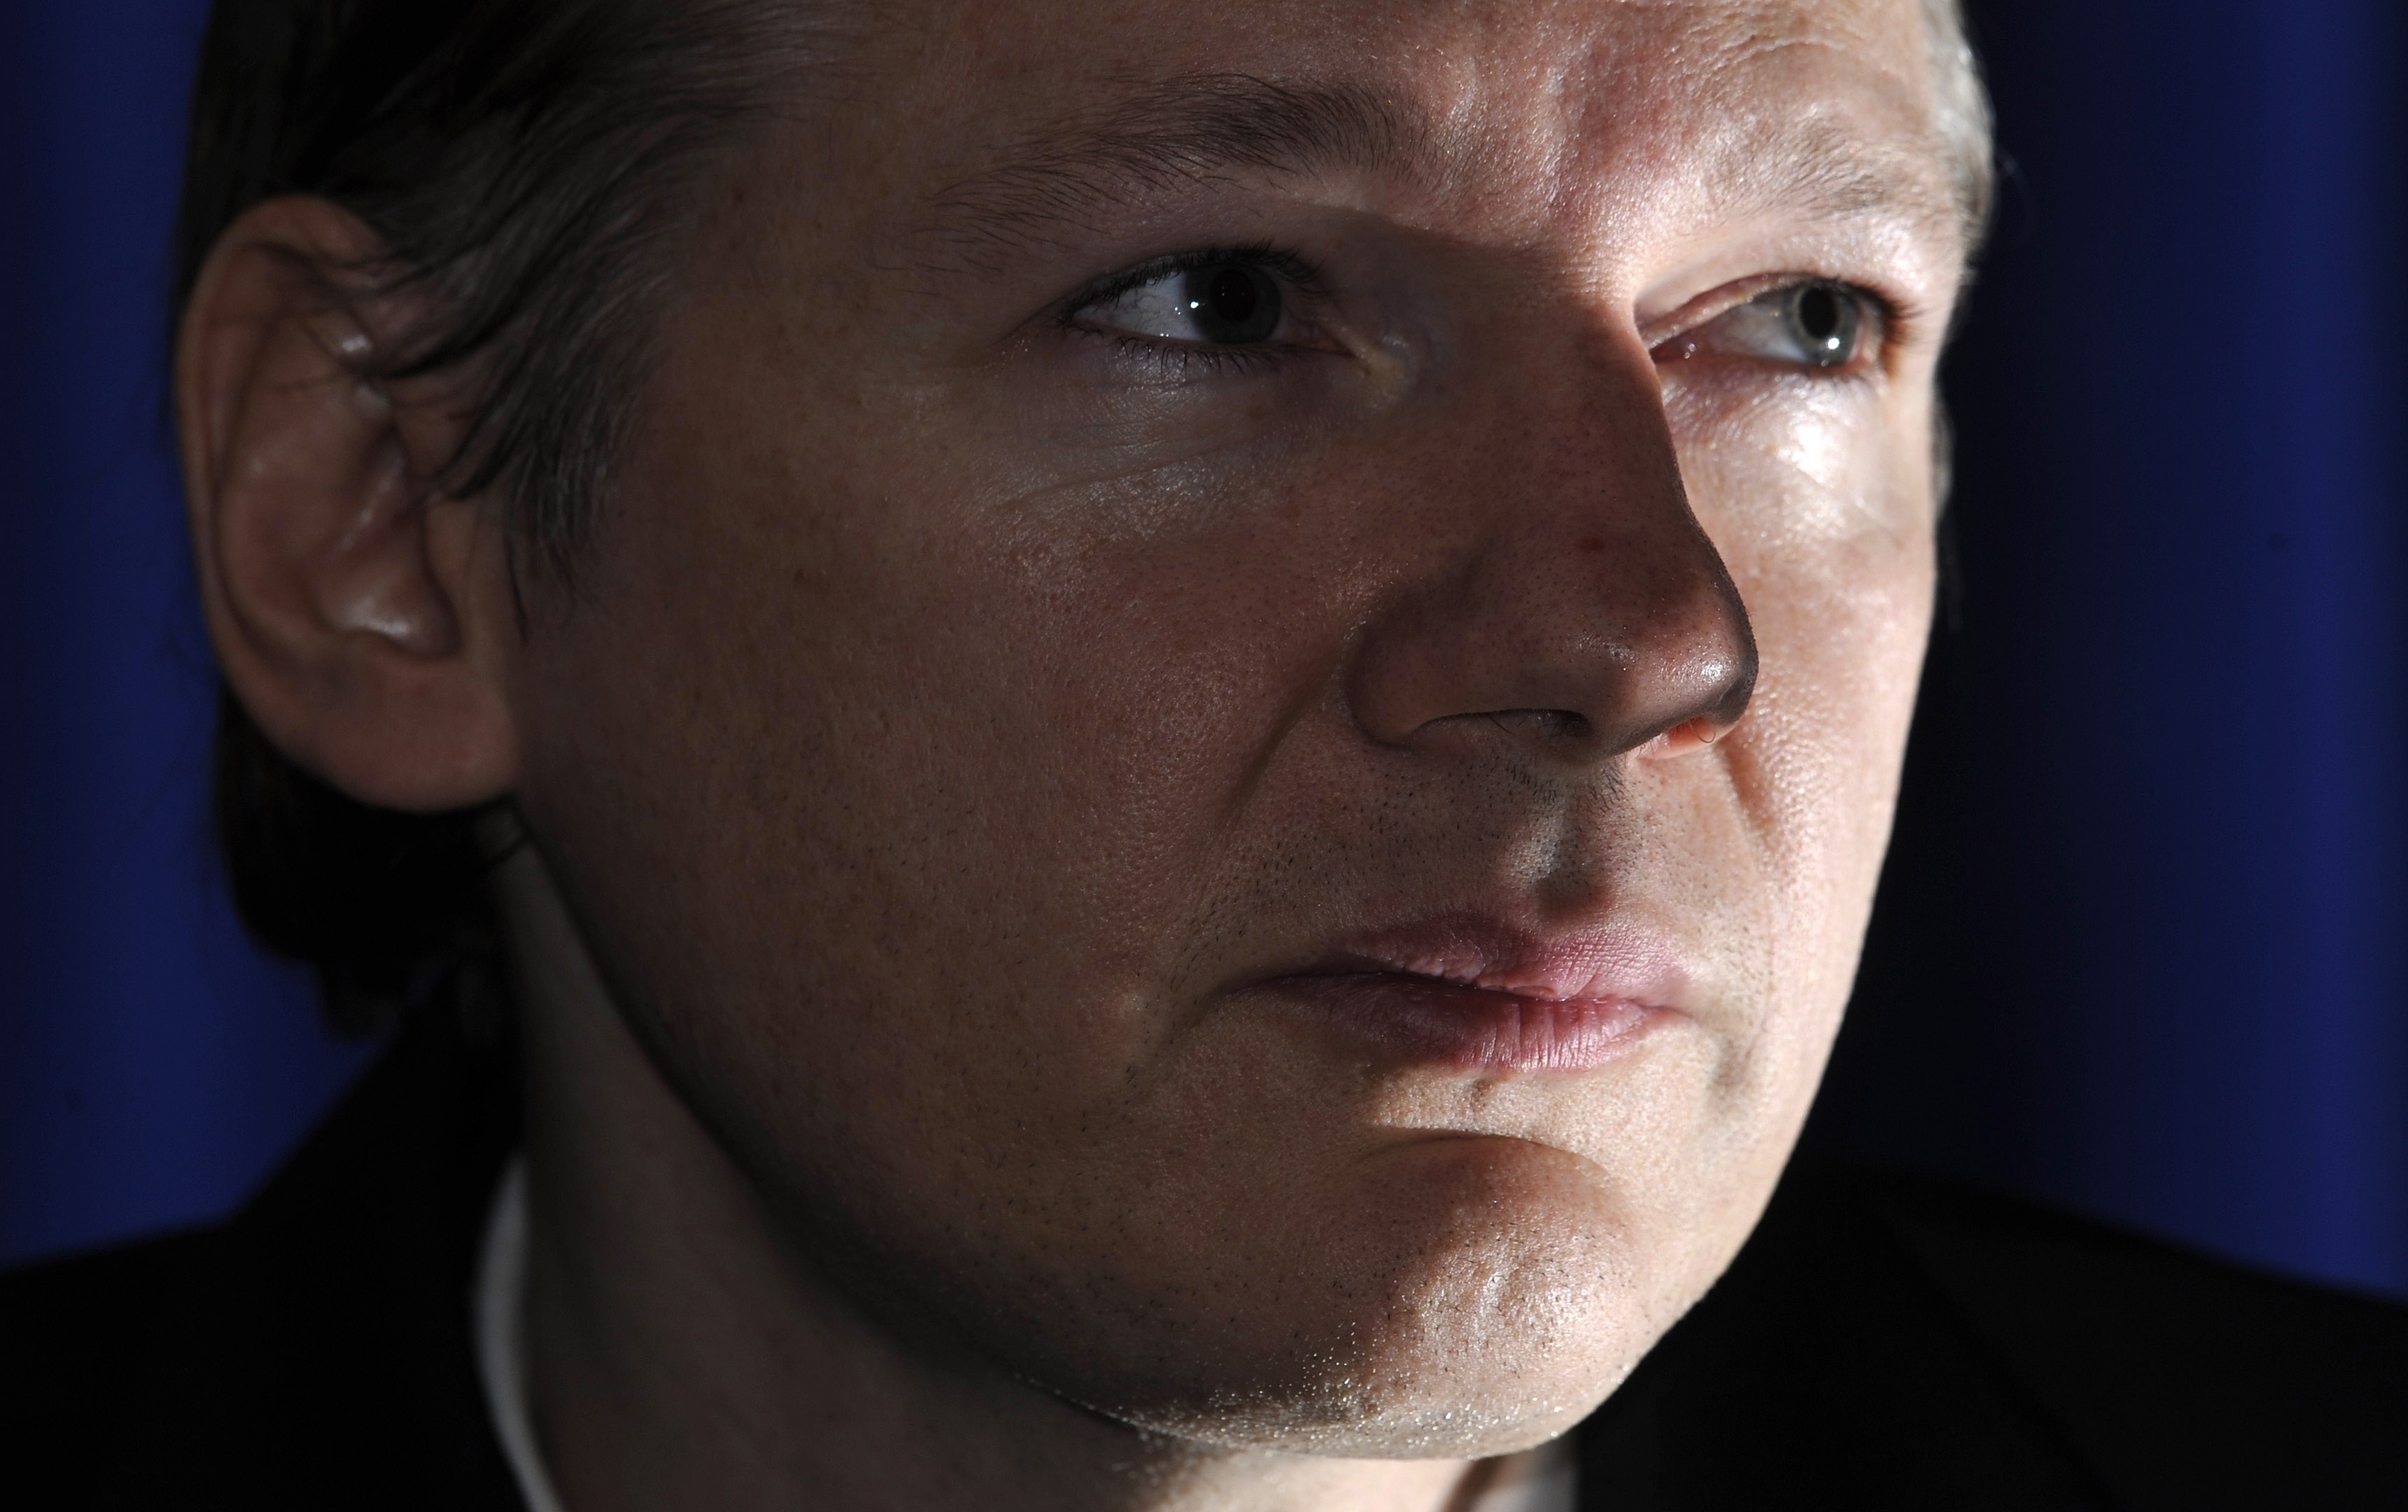 Sverige, Sexualbrott, Våldtäkt , Julian Assange, Wikileaks, Brott och straff, Storbritannien